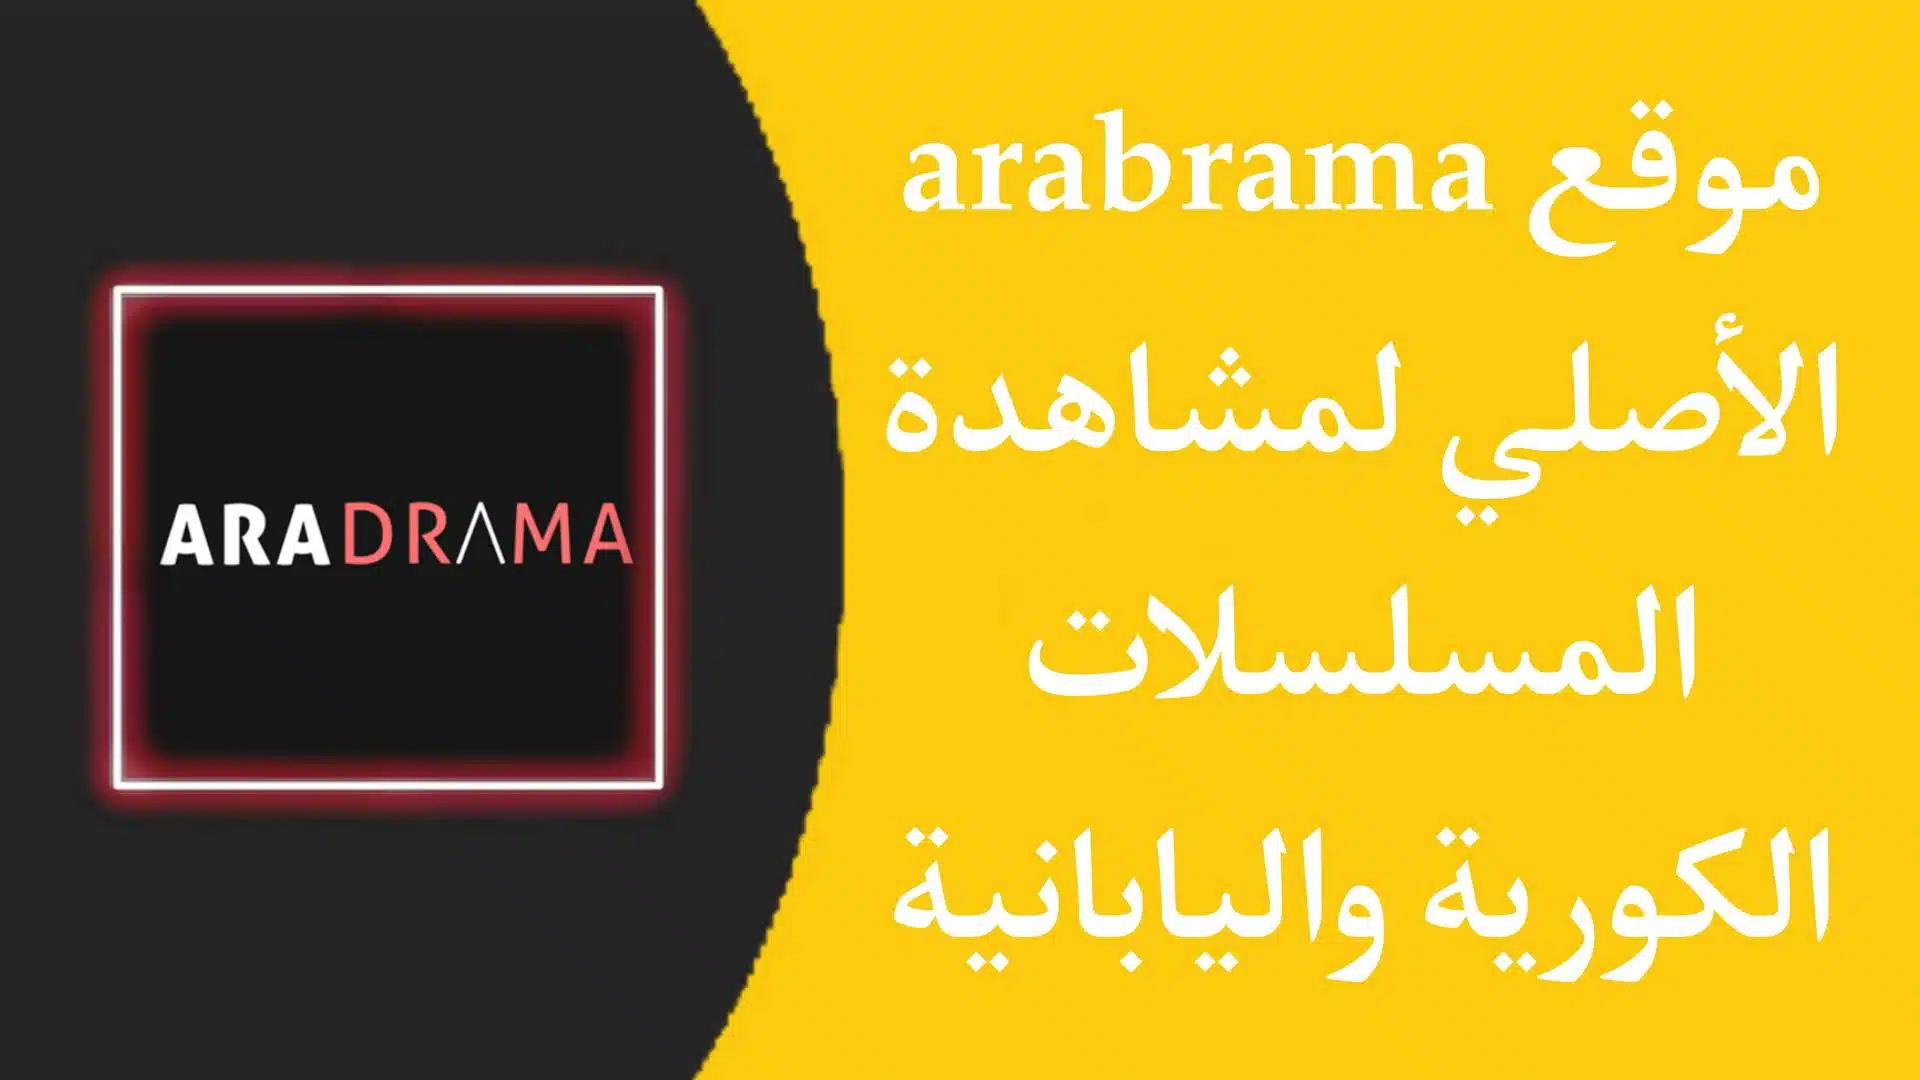 موقع Aradrama - مشاهدة المسلسلات الكورية واليابانية بجودة عالية مترجمة